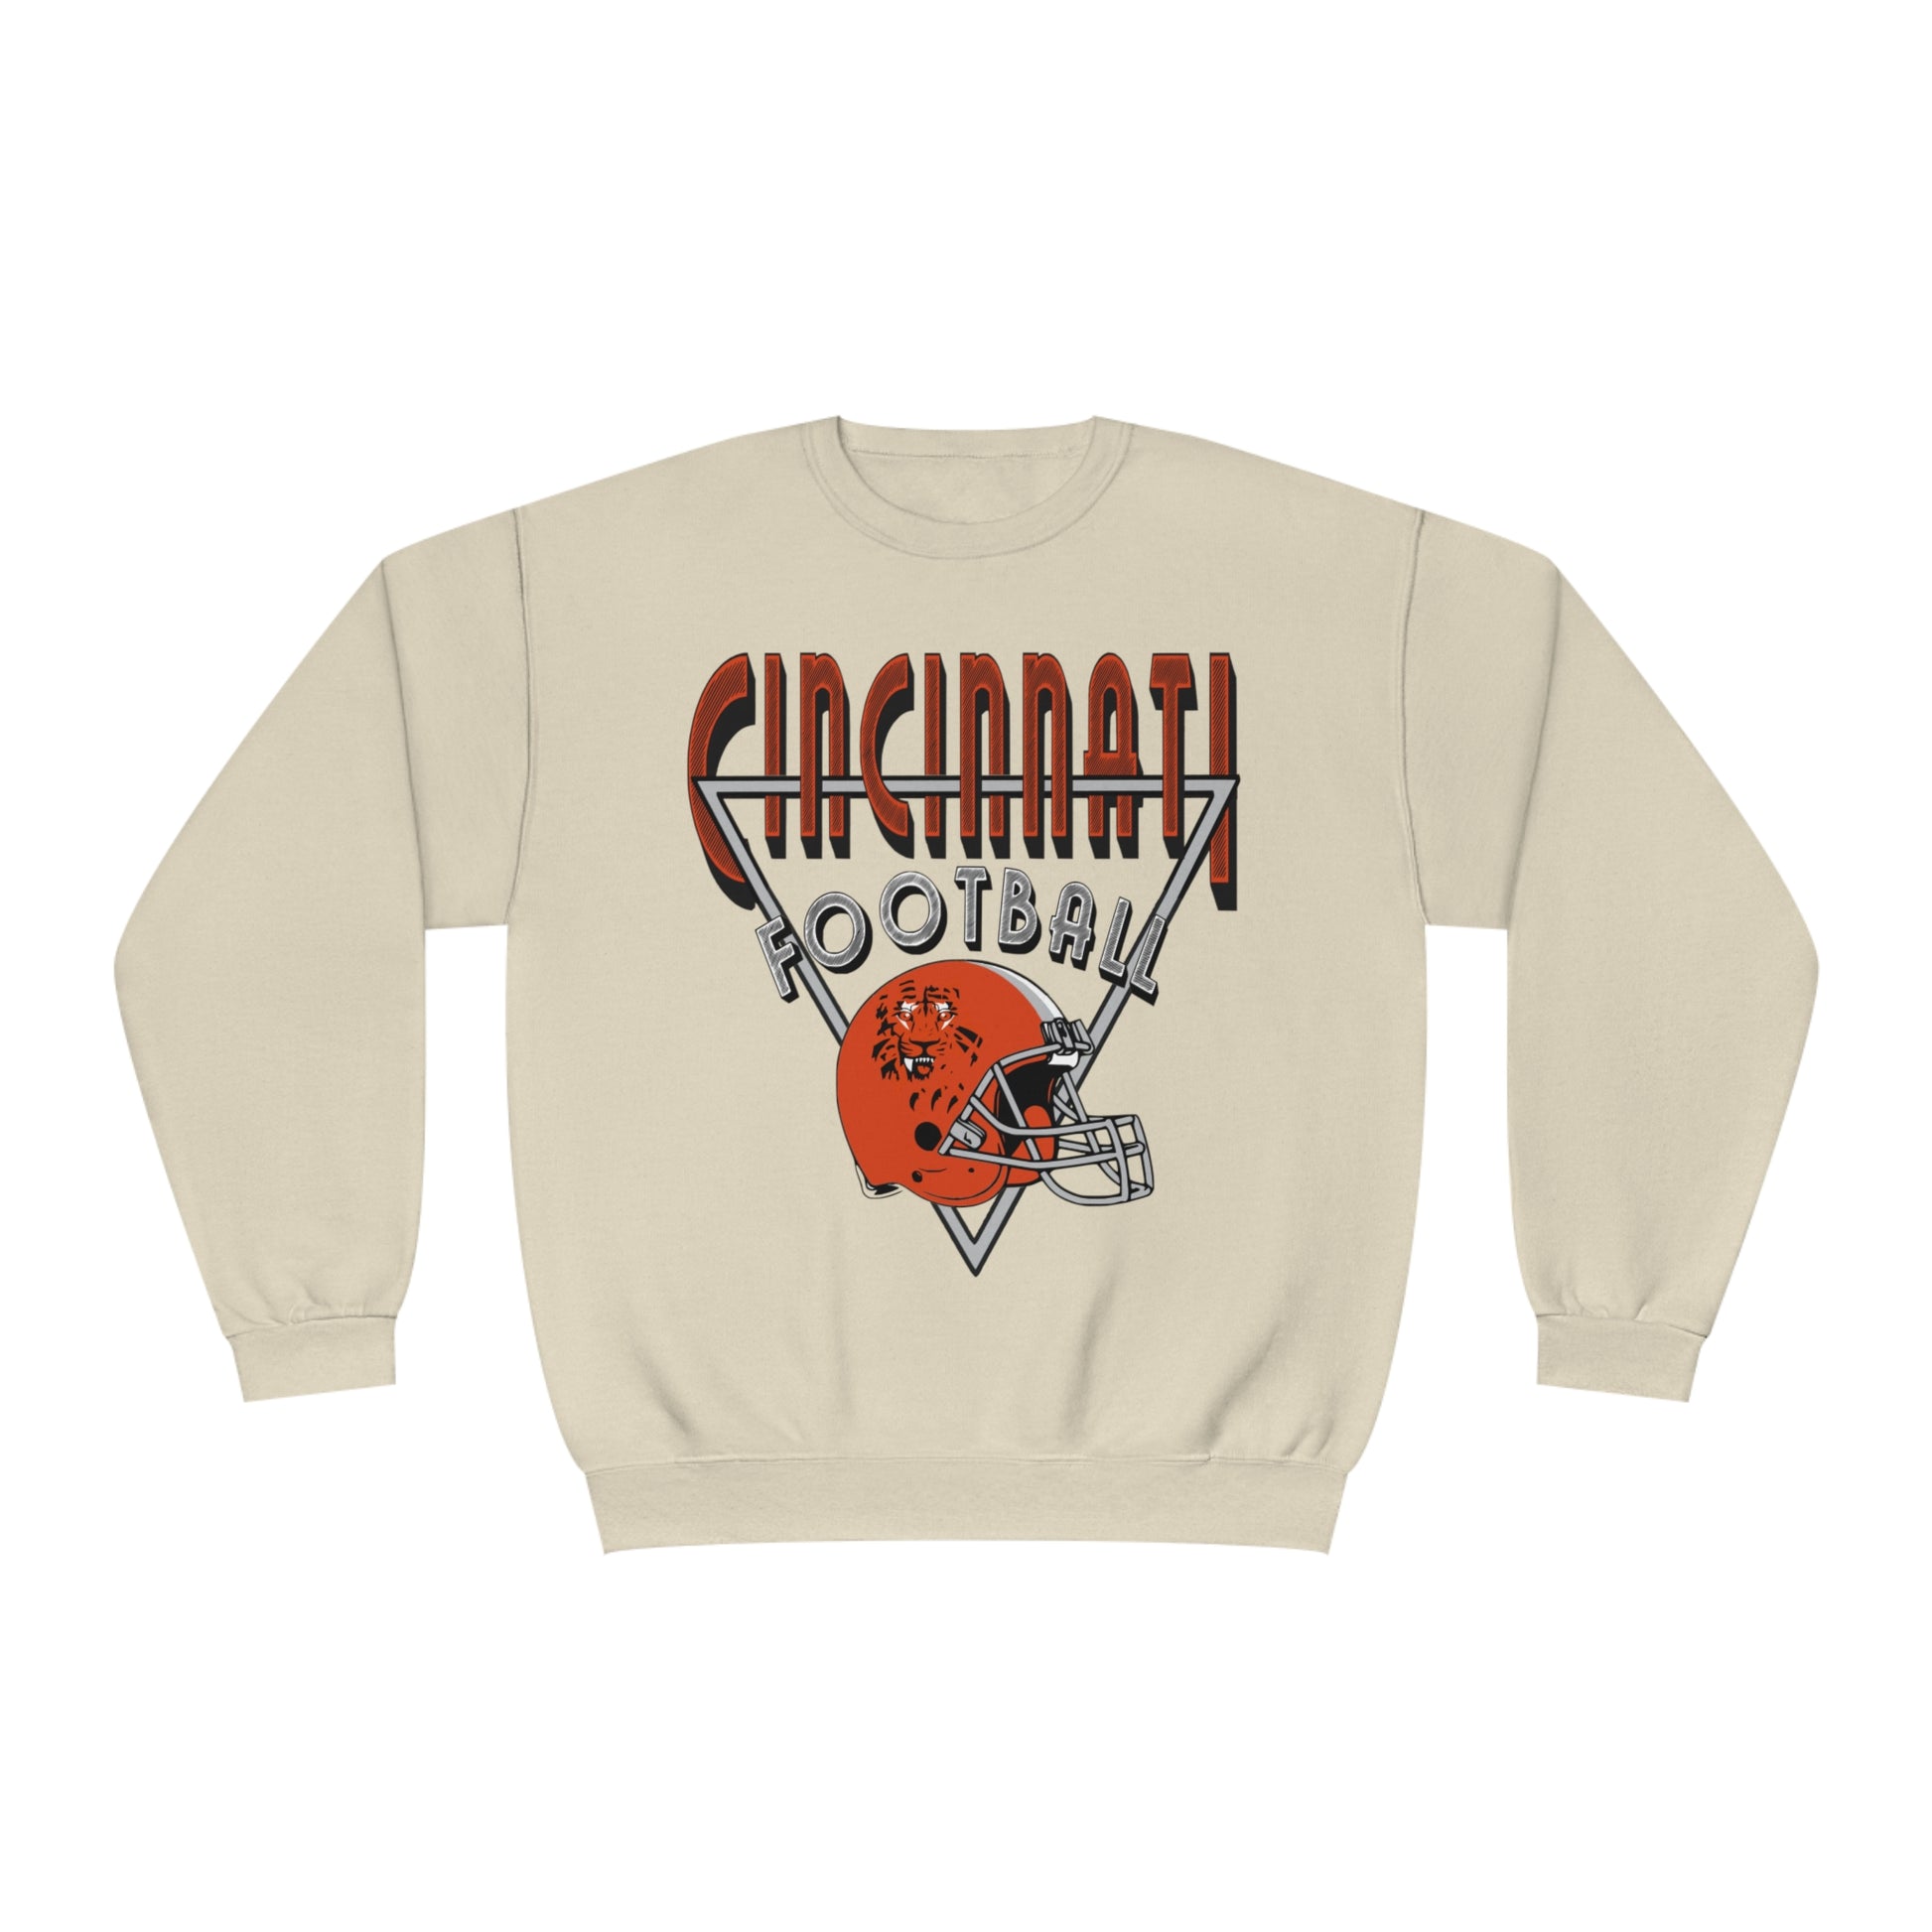 Vintage Cincinnati Bengals Crewneck Sweatshirt - 90's NFL Football Hoodie - Men's & Women's 90's Oversized Sand Beige Khaki Tan